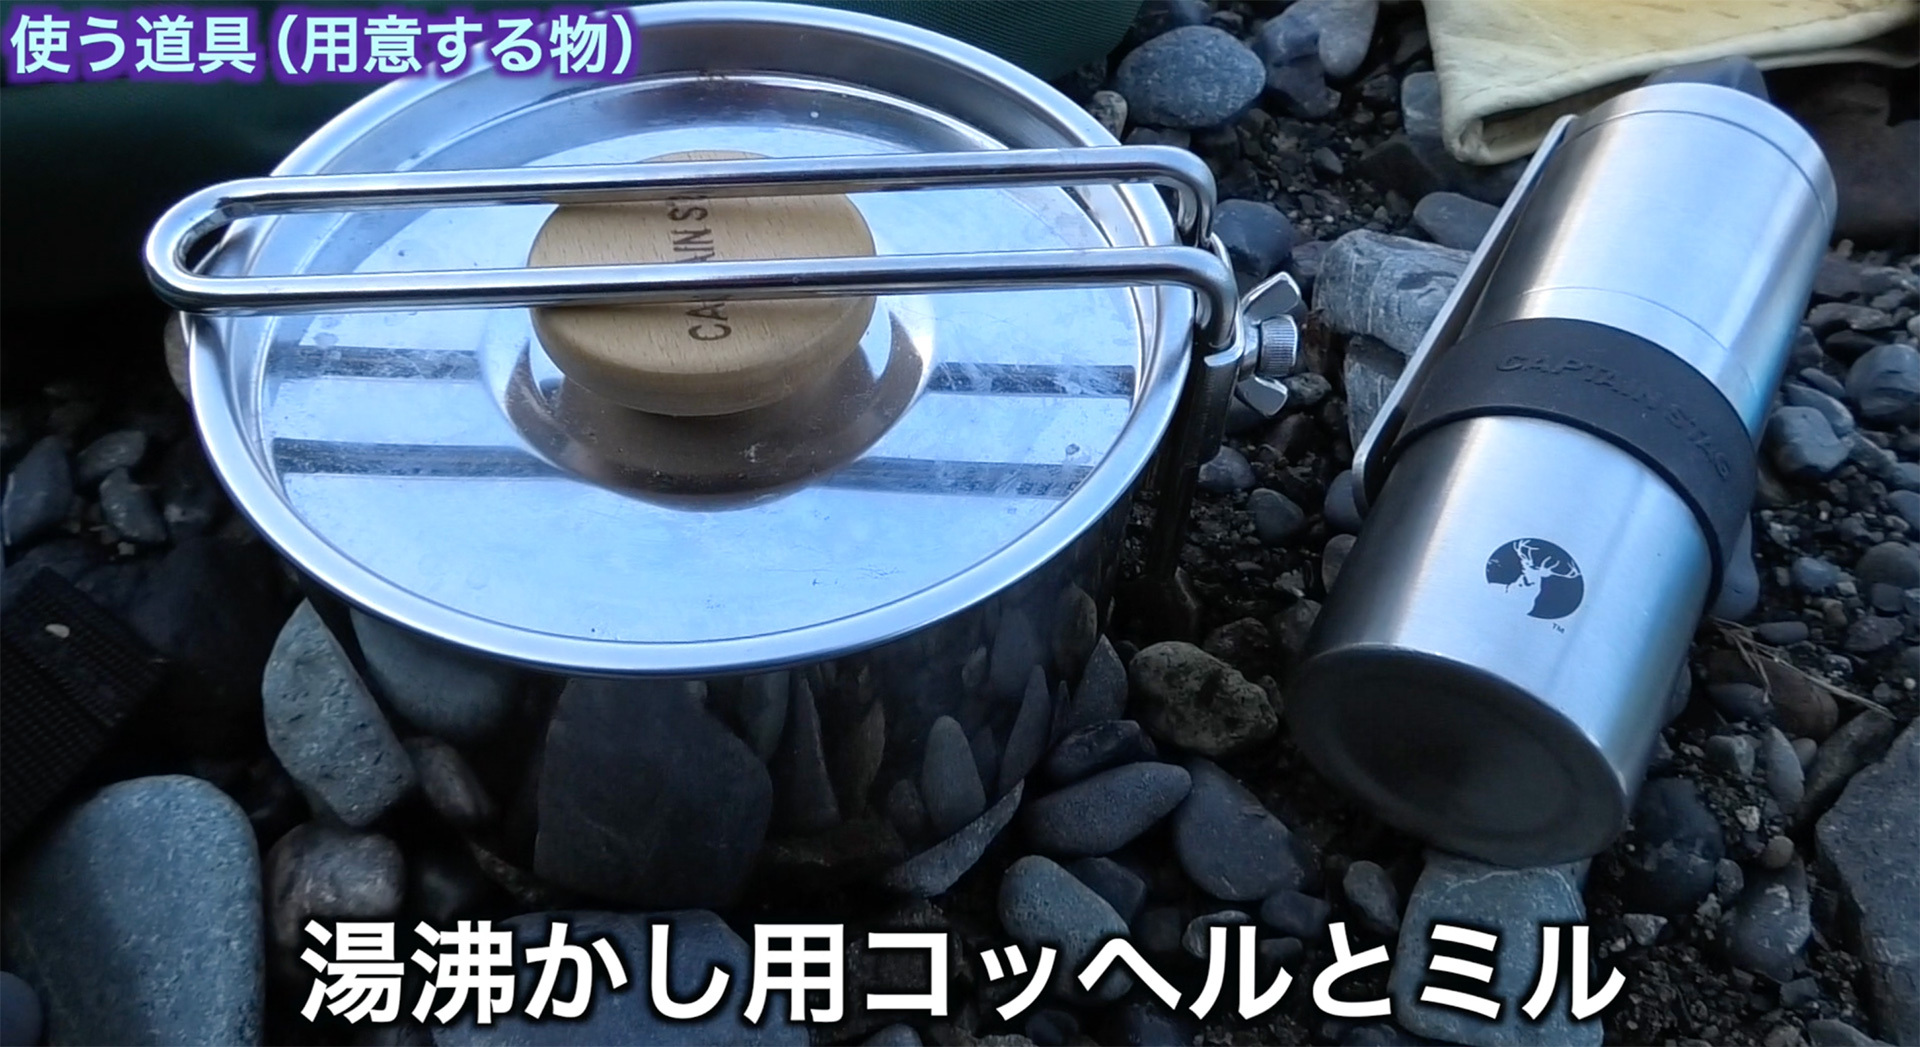 湯沸かし用の小型の鍋とコーヒーミル